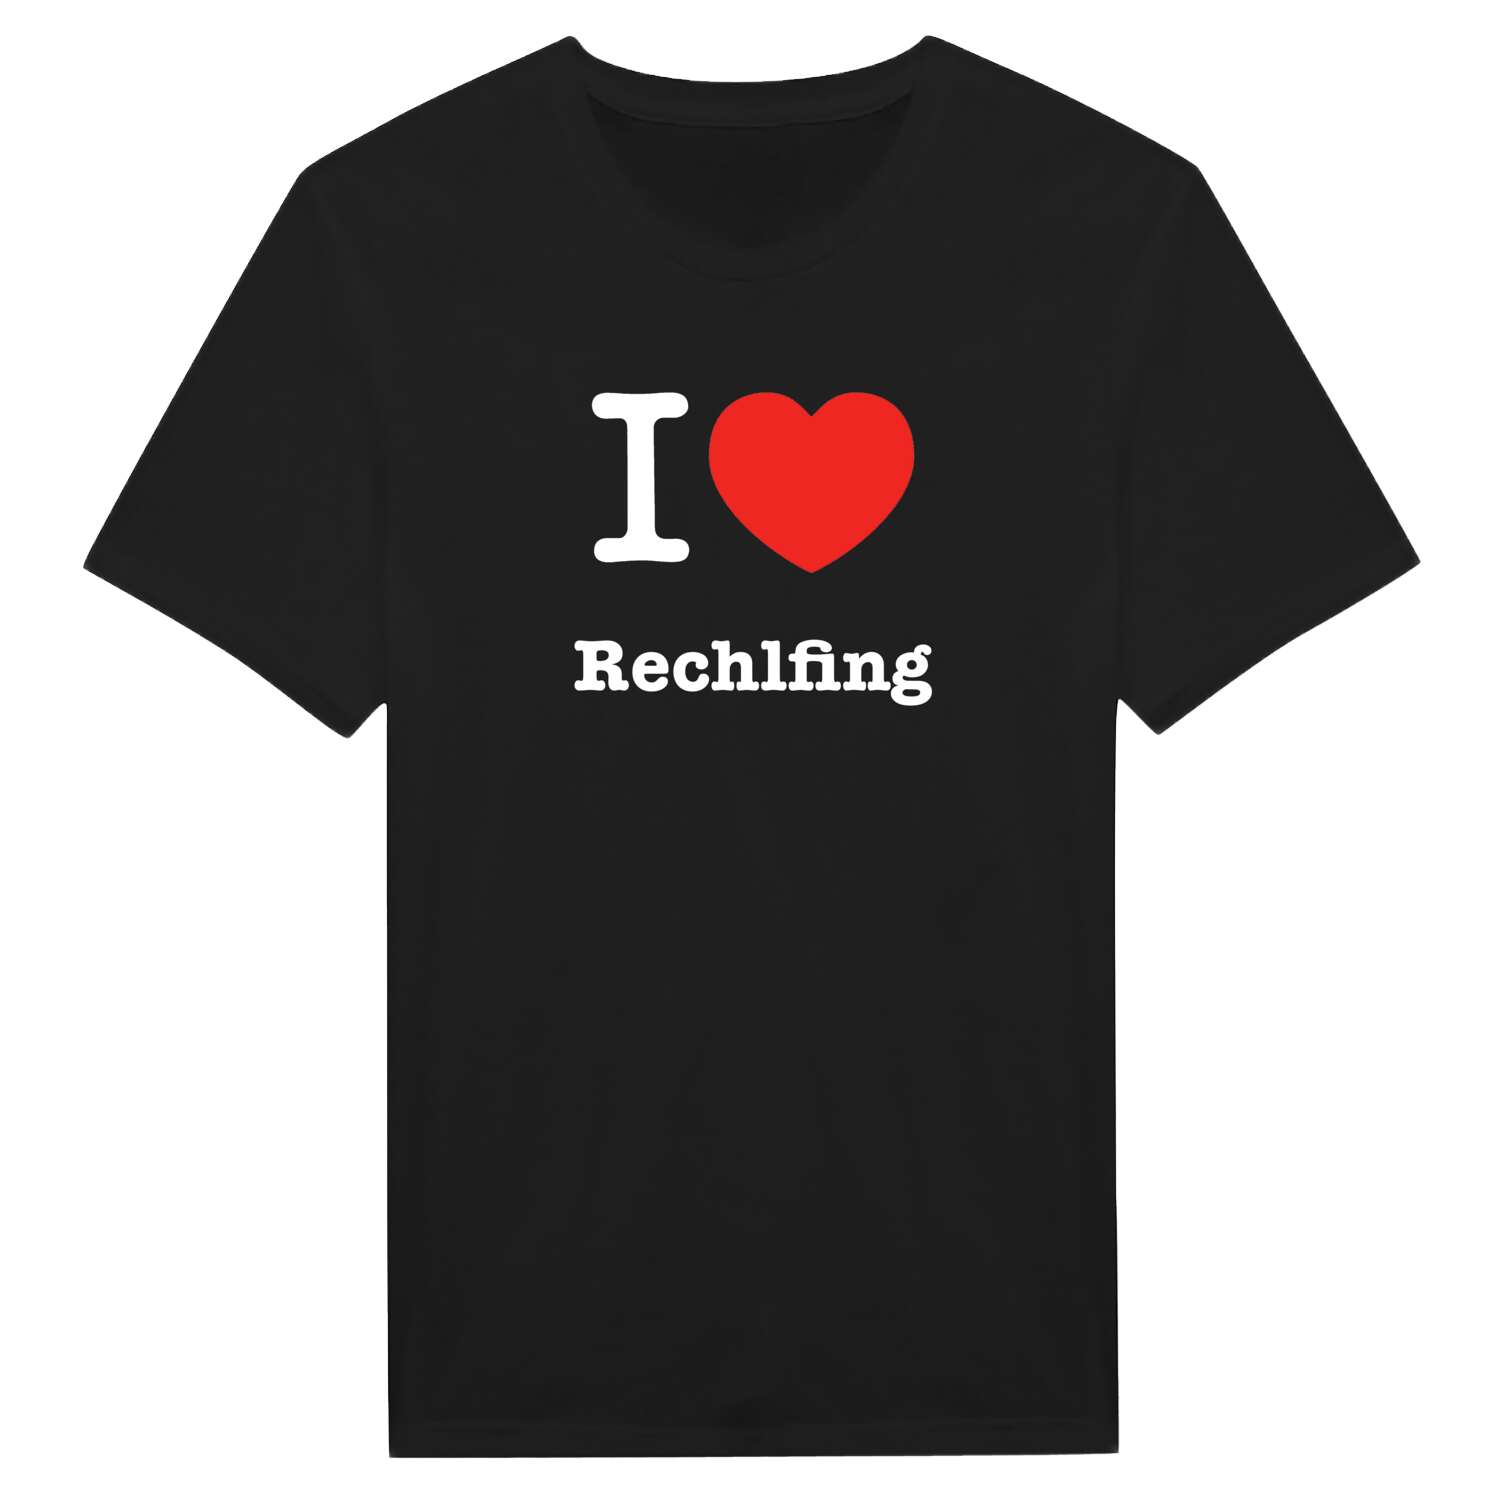 Rechlfing T-Shirt »I love«